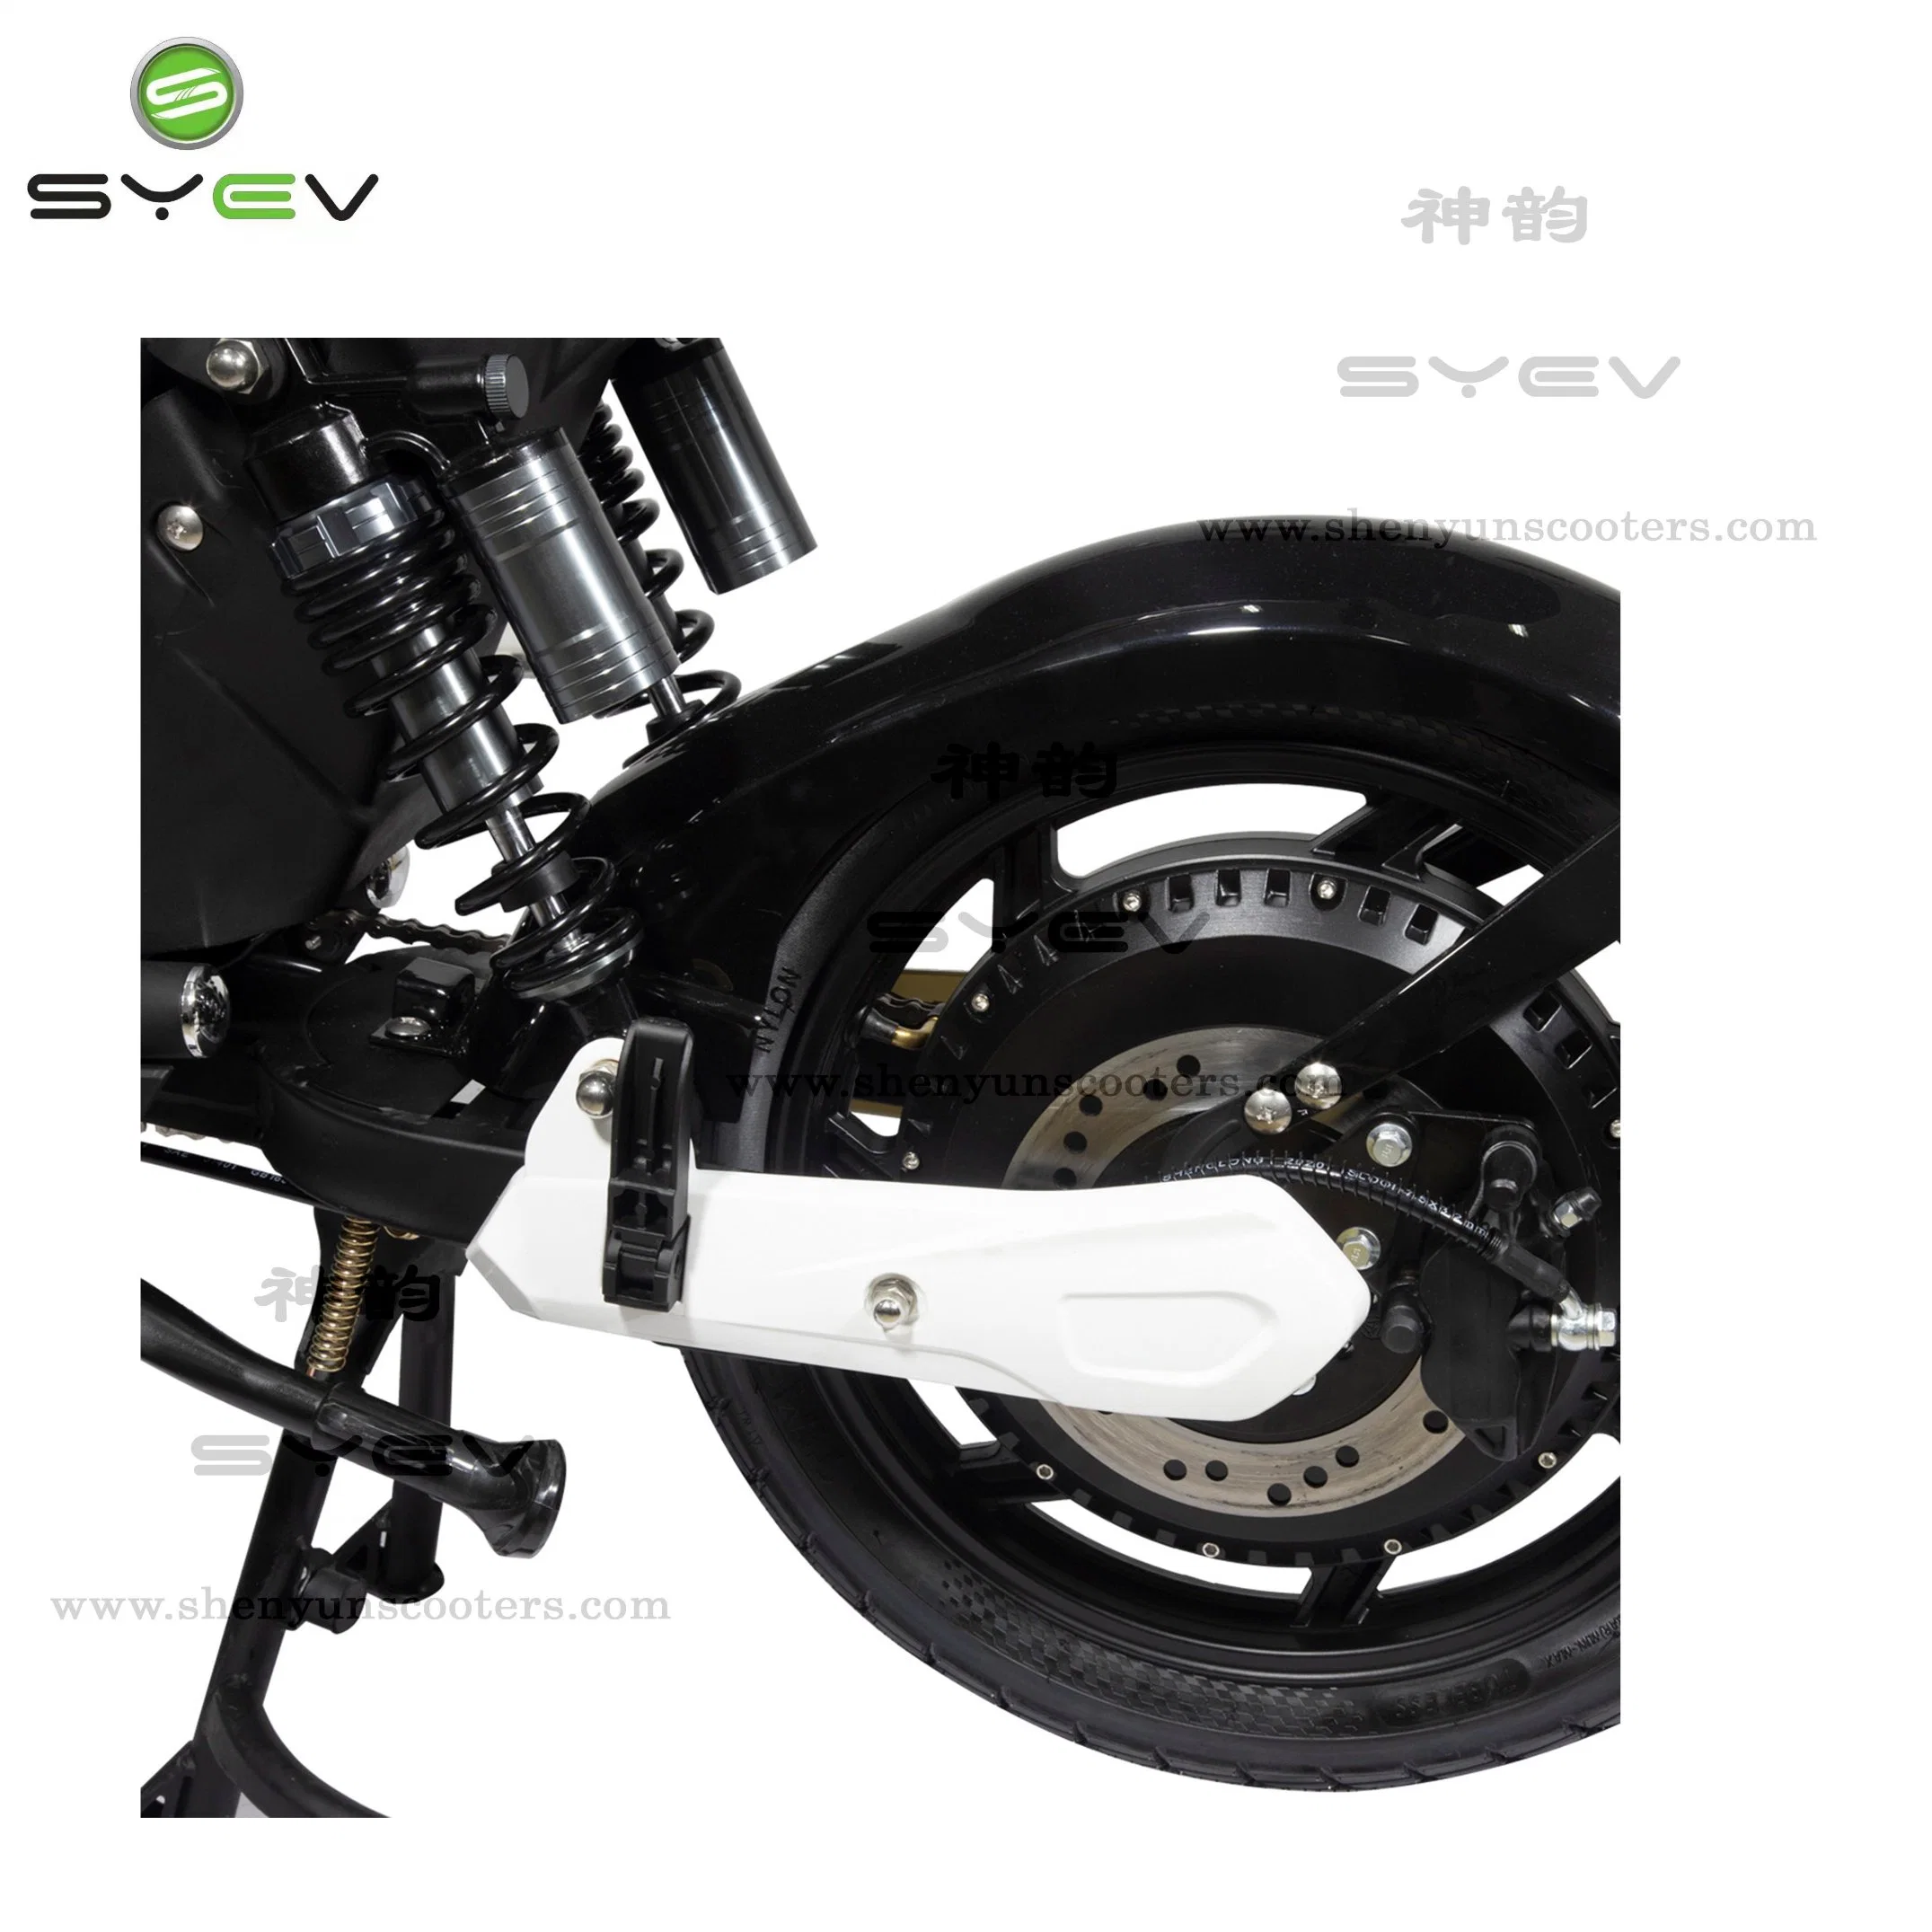 Syev batería marca la libertad de viajar el vacío de acero de neumáticos para Bicicleta eléctrica